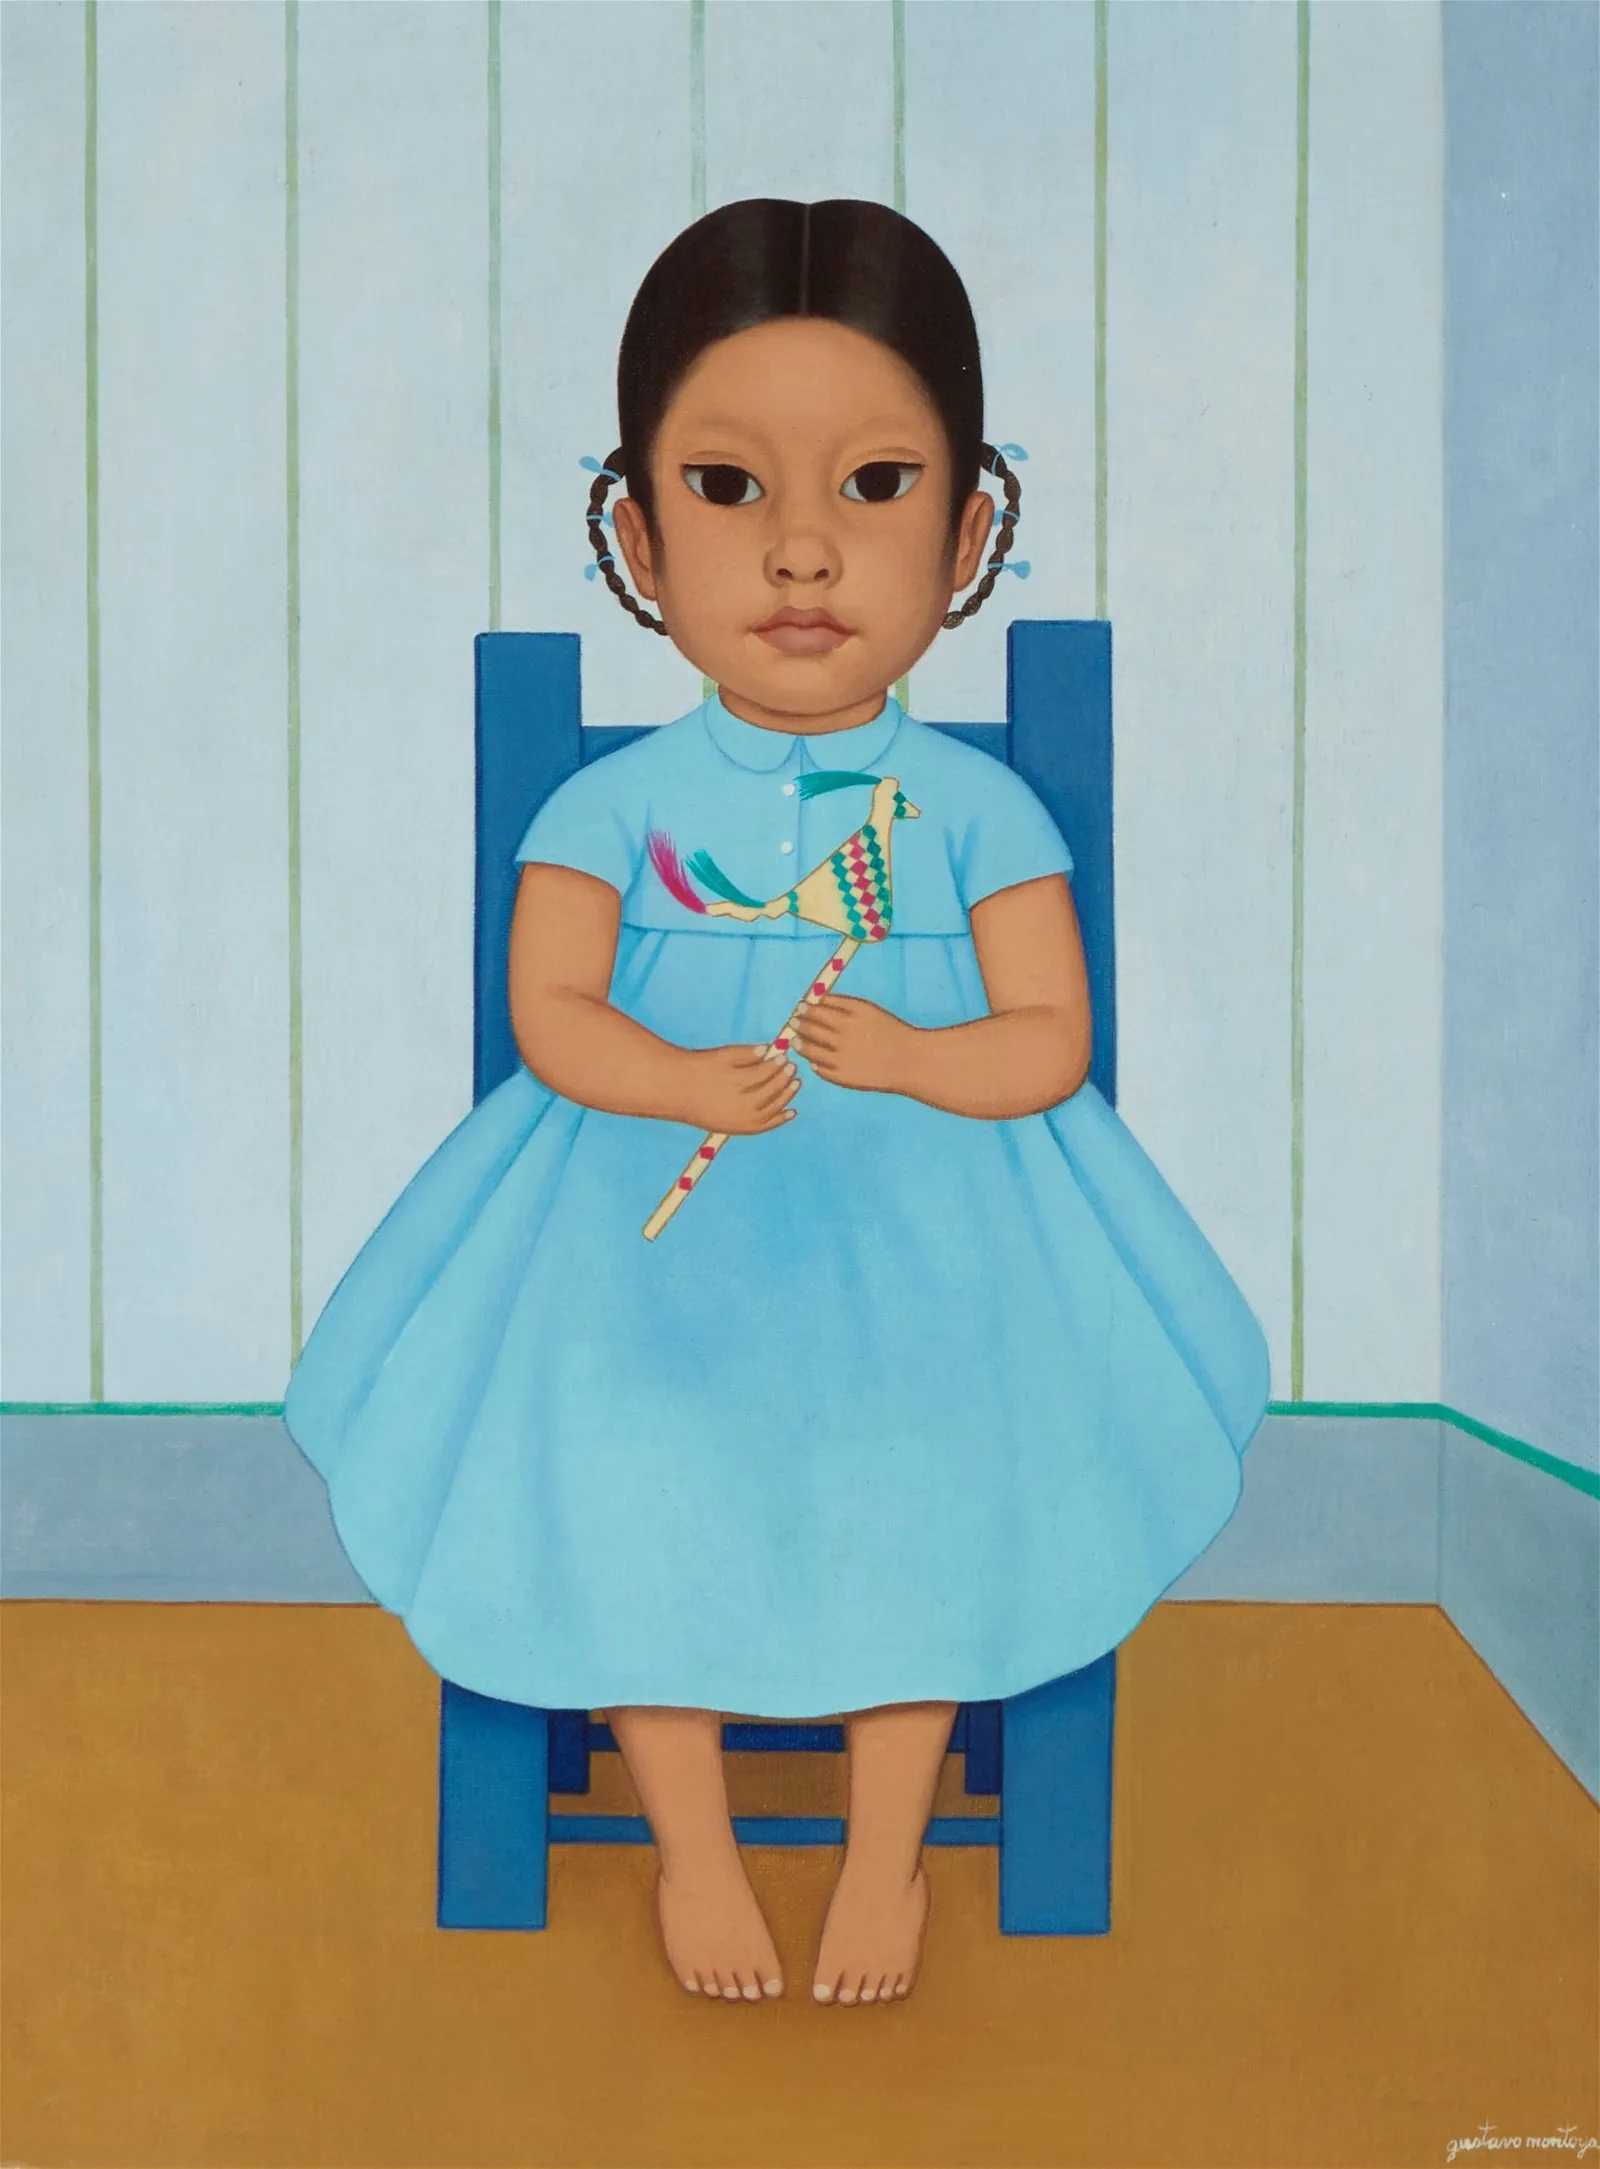 Gustavo Montoya, 'Girl on a Chair,' estimated at $8,000-$12,000 at John Moran.